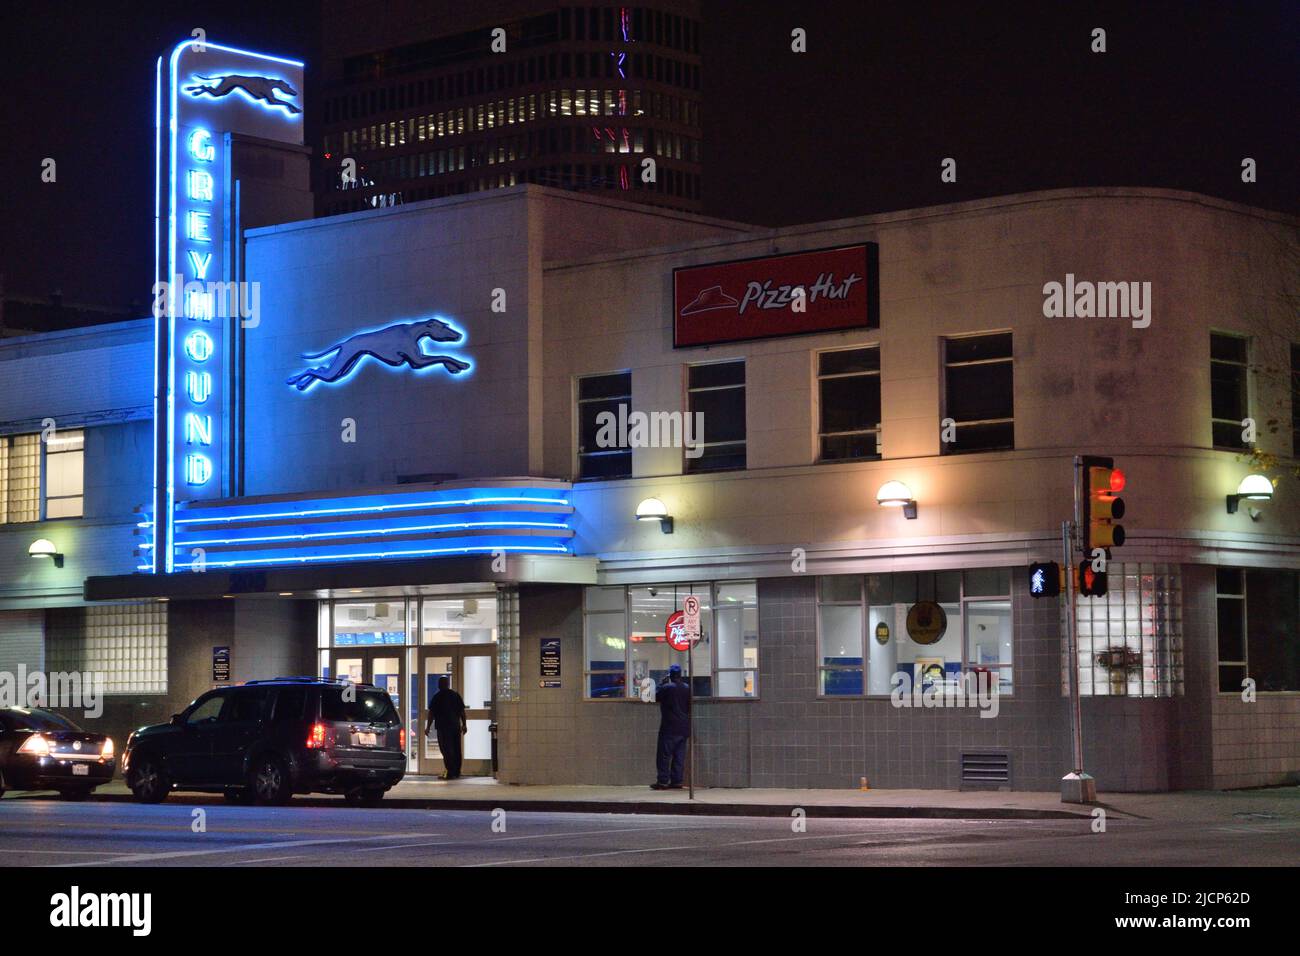 Coches estacionados frente a la estación de autobuses Greyhound, con luces de neón azules, en el centro de Dallas, Texas ca. 2015 Foto de stock